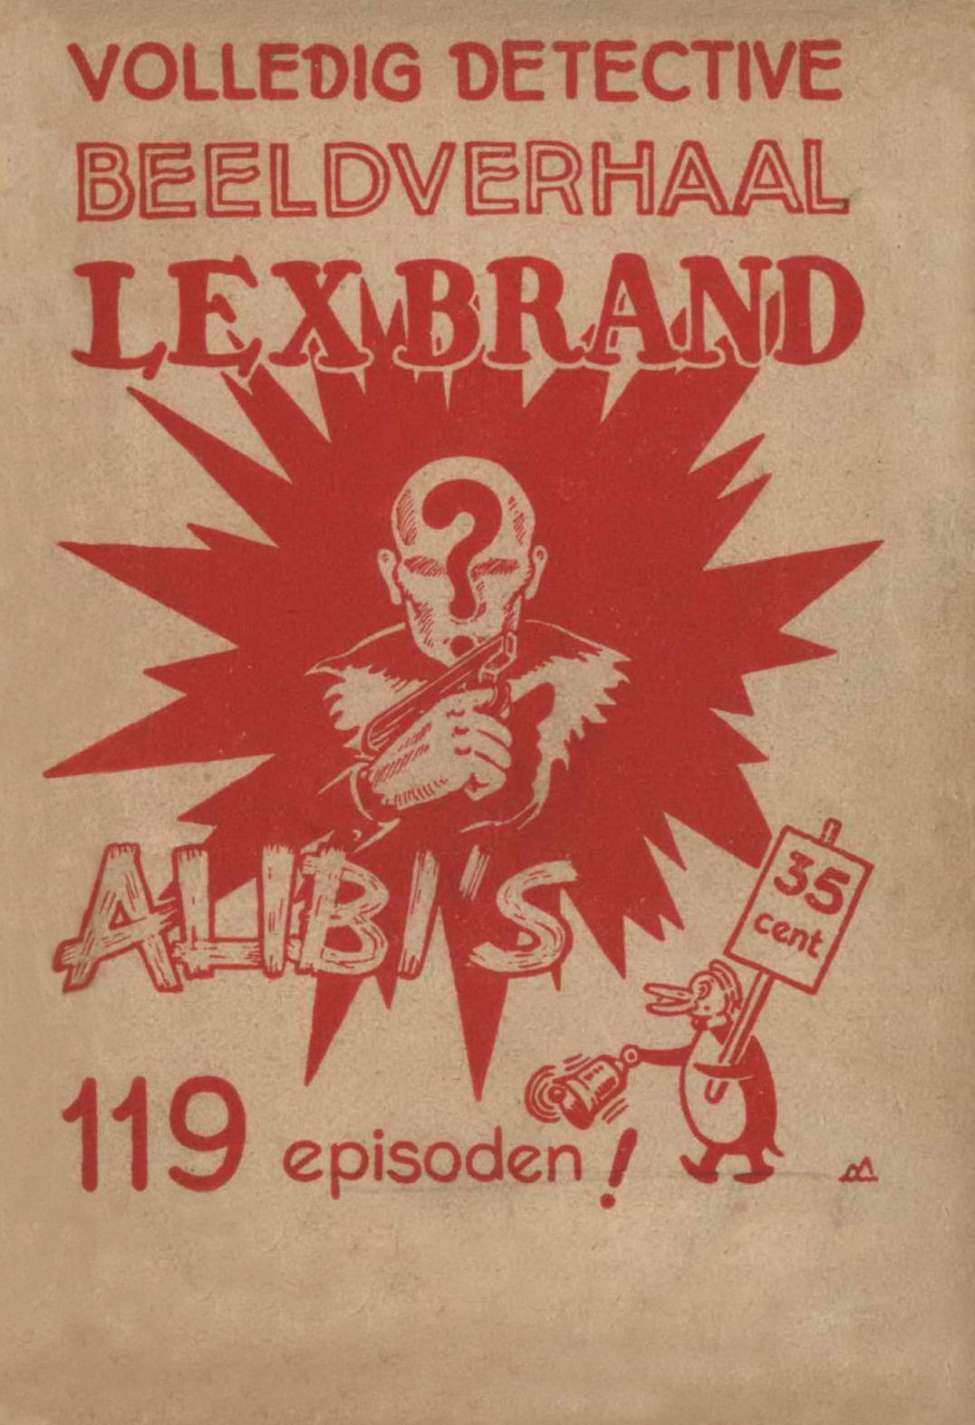 Book Cover For Lex Brand 2 - Alibi's